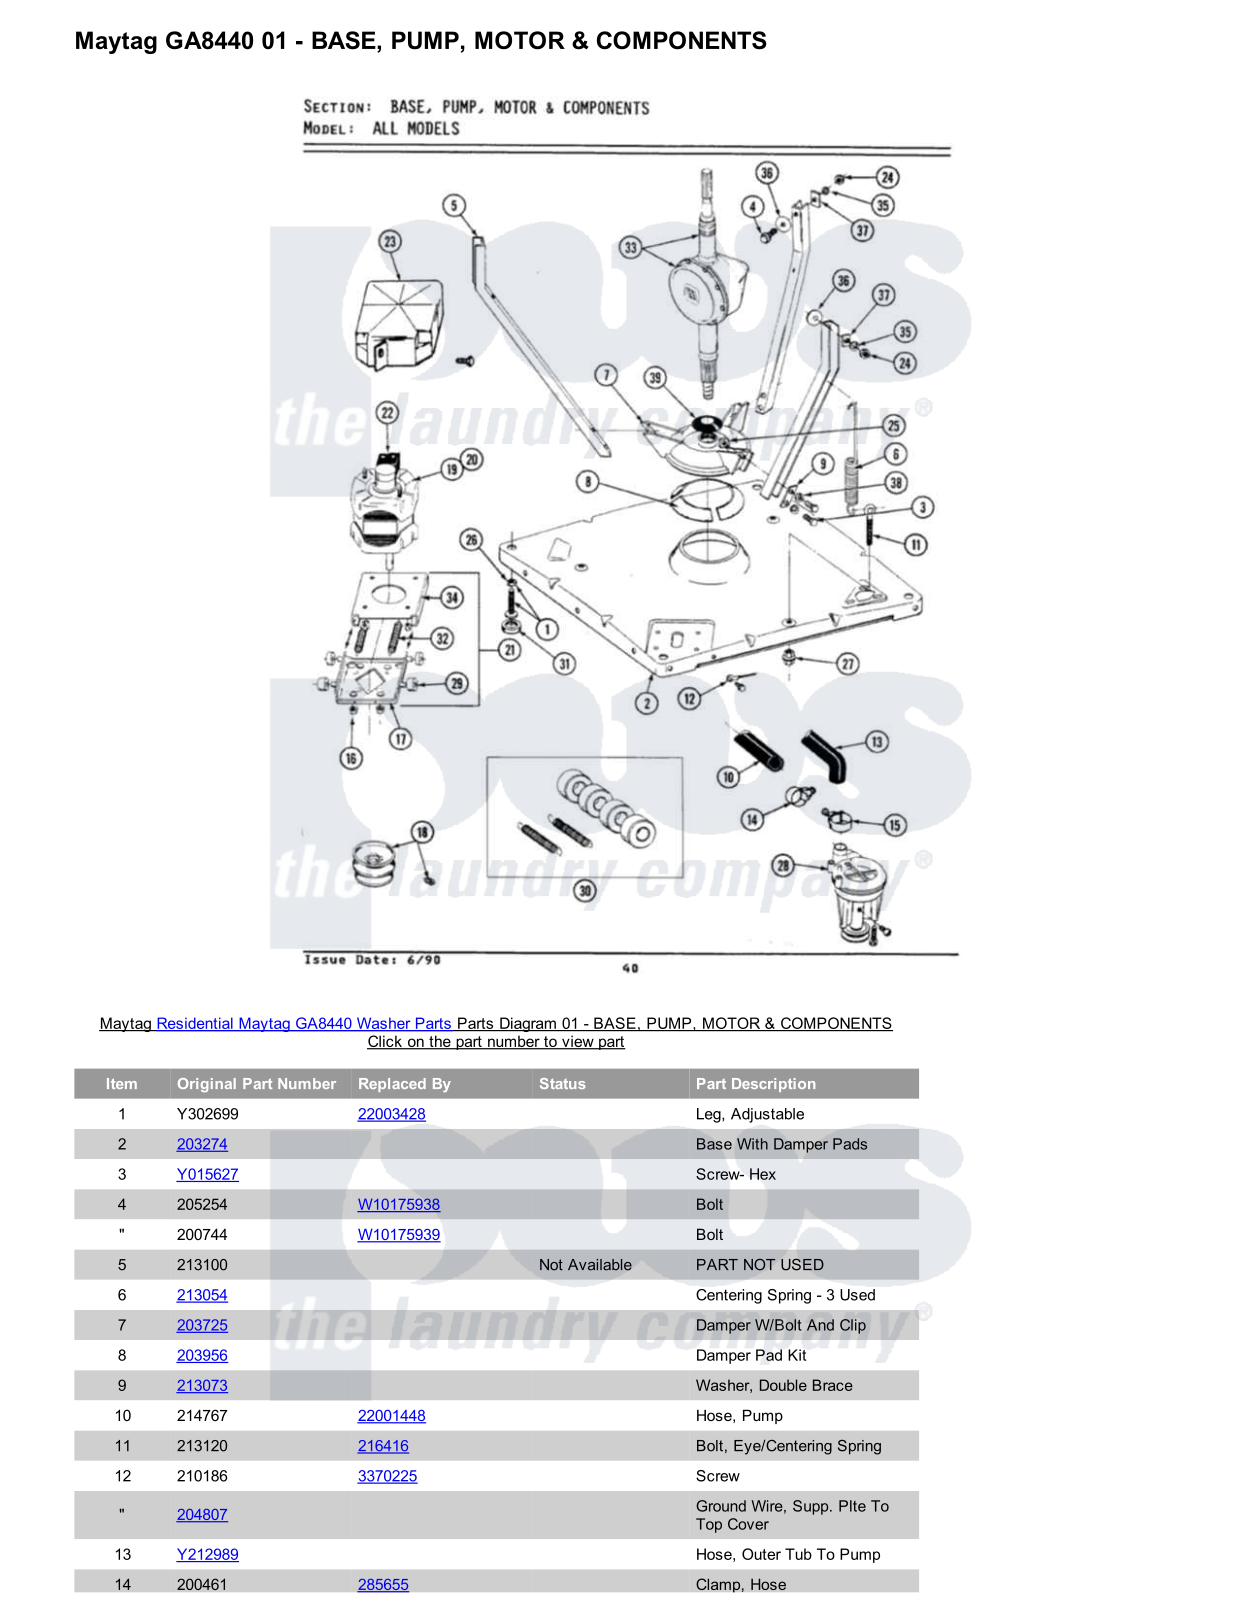 Maytag GA8440 Parts Diagram